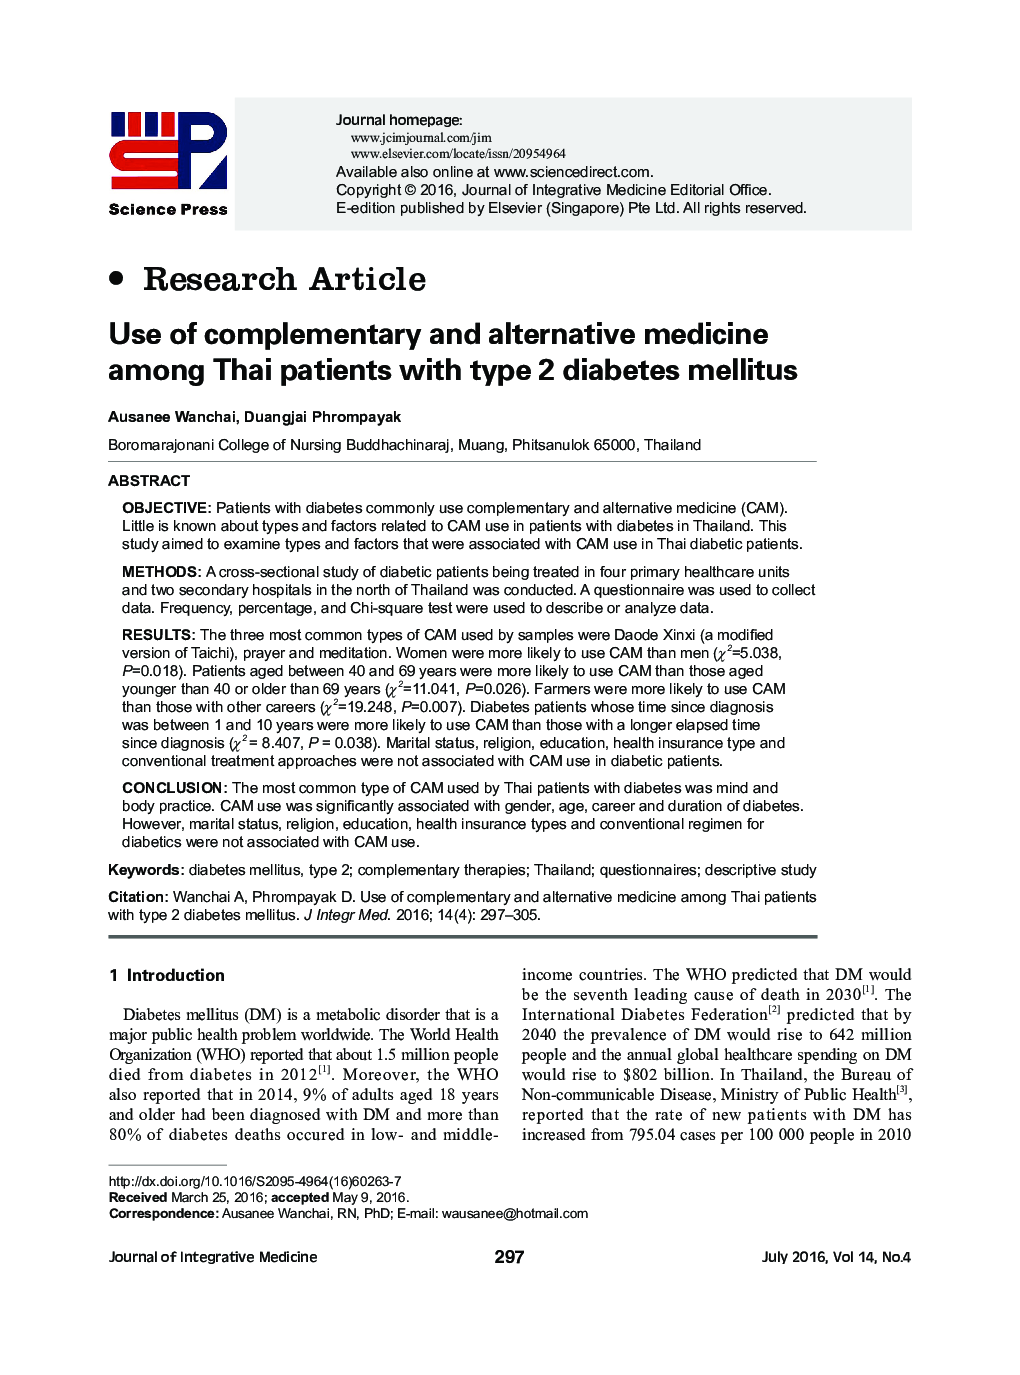 استفاده از طب مکمل و جایگزین در میان بیماران تایلندی مبتلا به دیابت نوع 2 